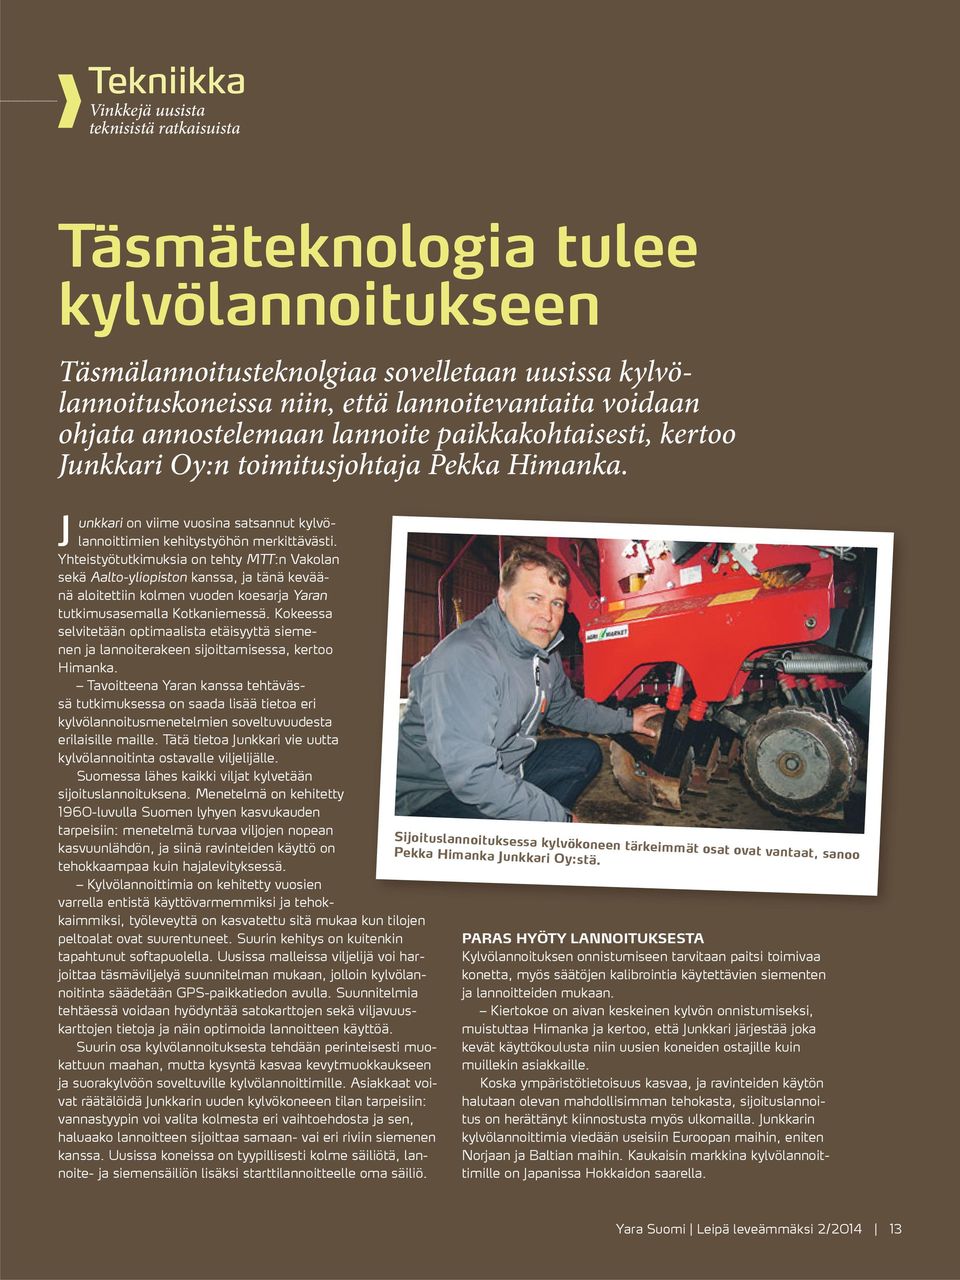 J Yhteistyötutkimuksia on tehty MTT:n Vakolan sekä Aalto-yliopiston kanssa, ja tänä keväänä aloitettiin kolmen vuoden koesarja Yaran tutkimusasemalla Kotkaniemessä.